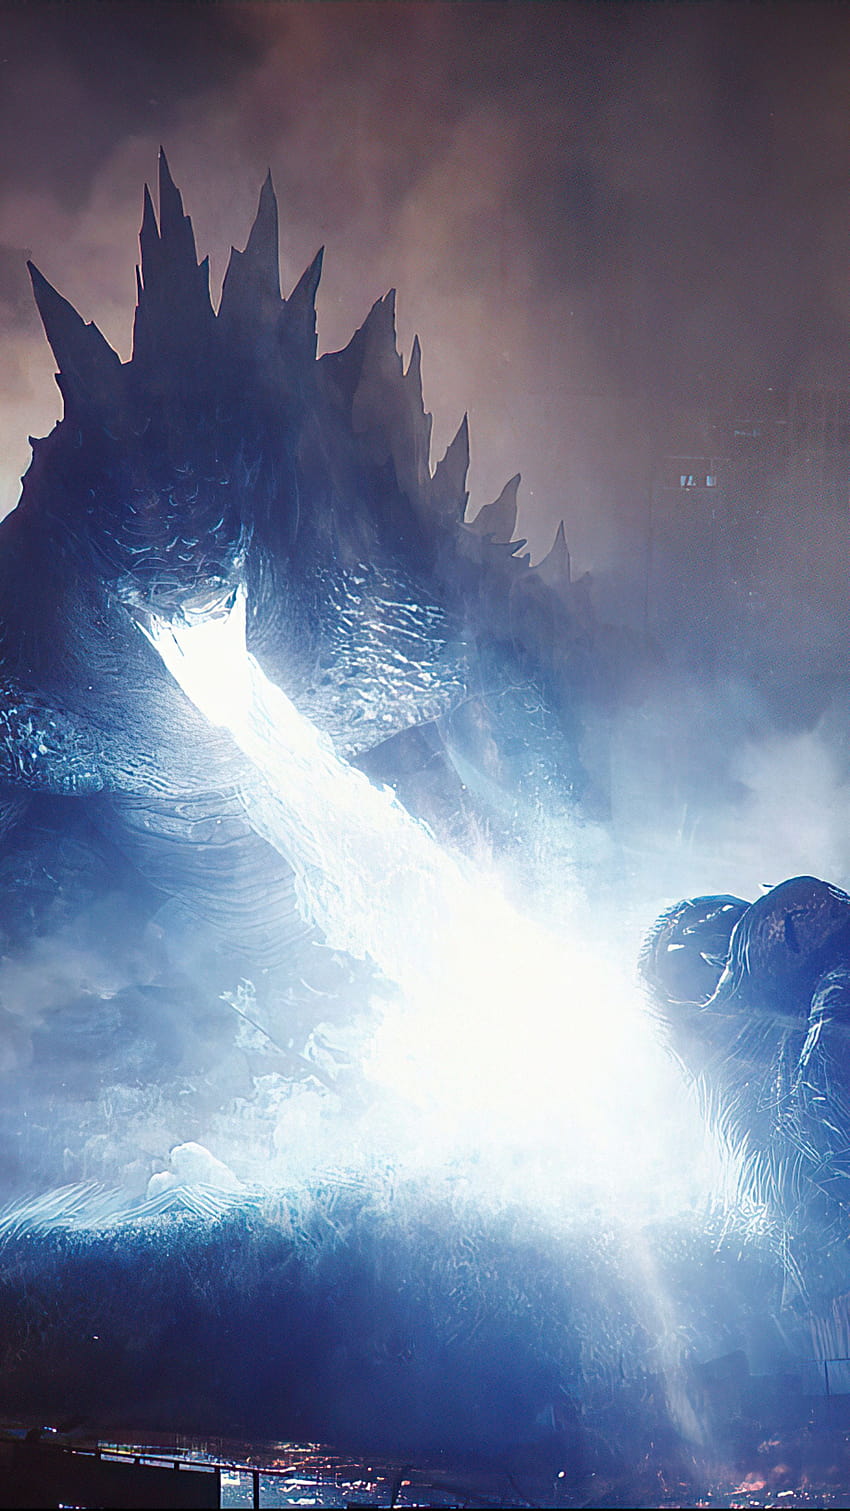 Godzilla vs. Kong' thắng lớn ở châu Á - Phim ảnh